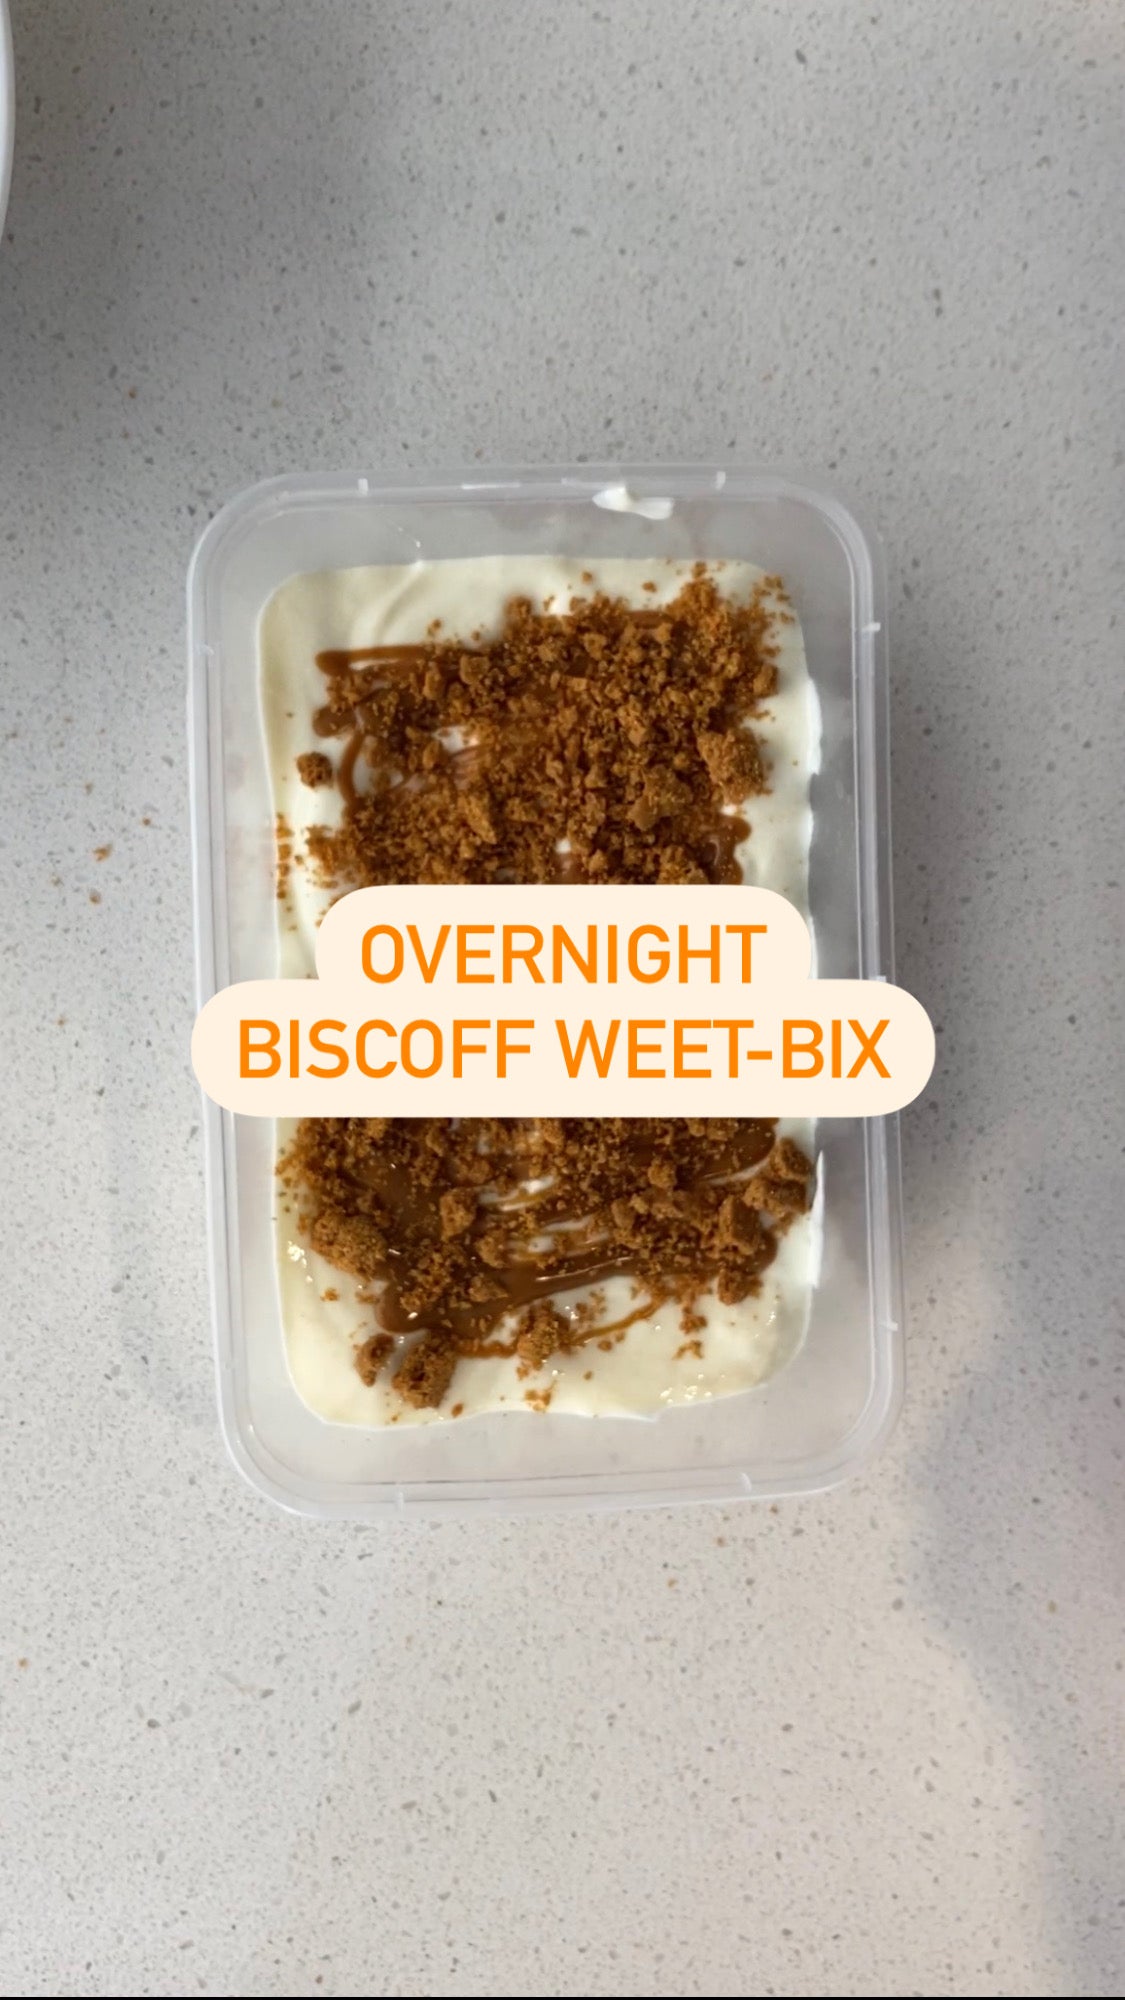 Overnight biscoff weet-bix